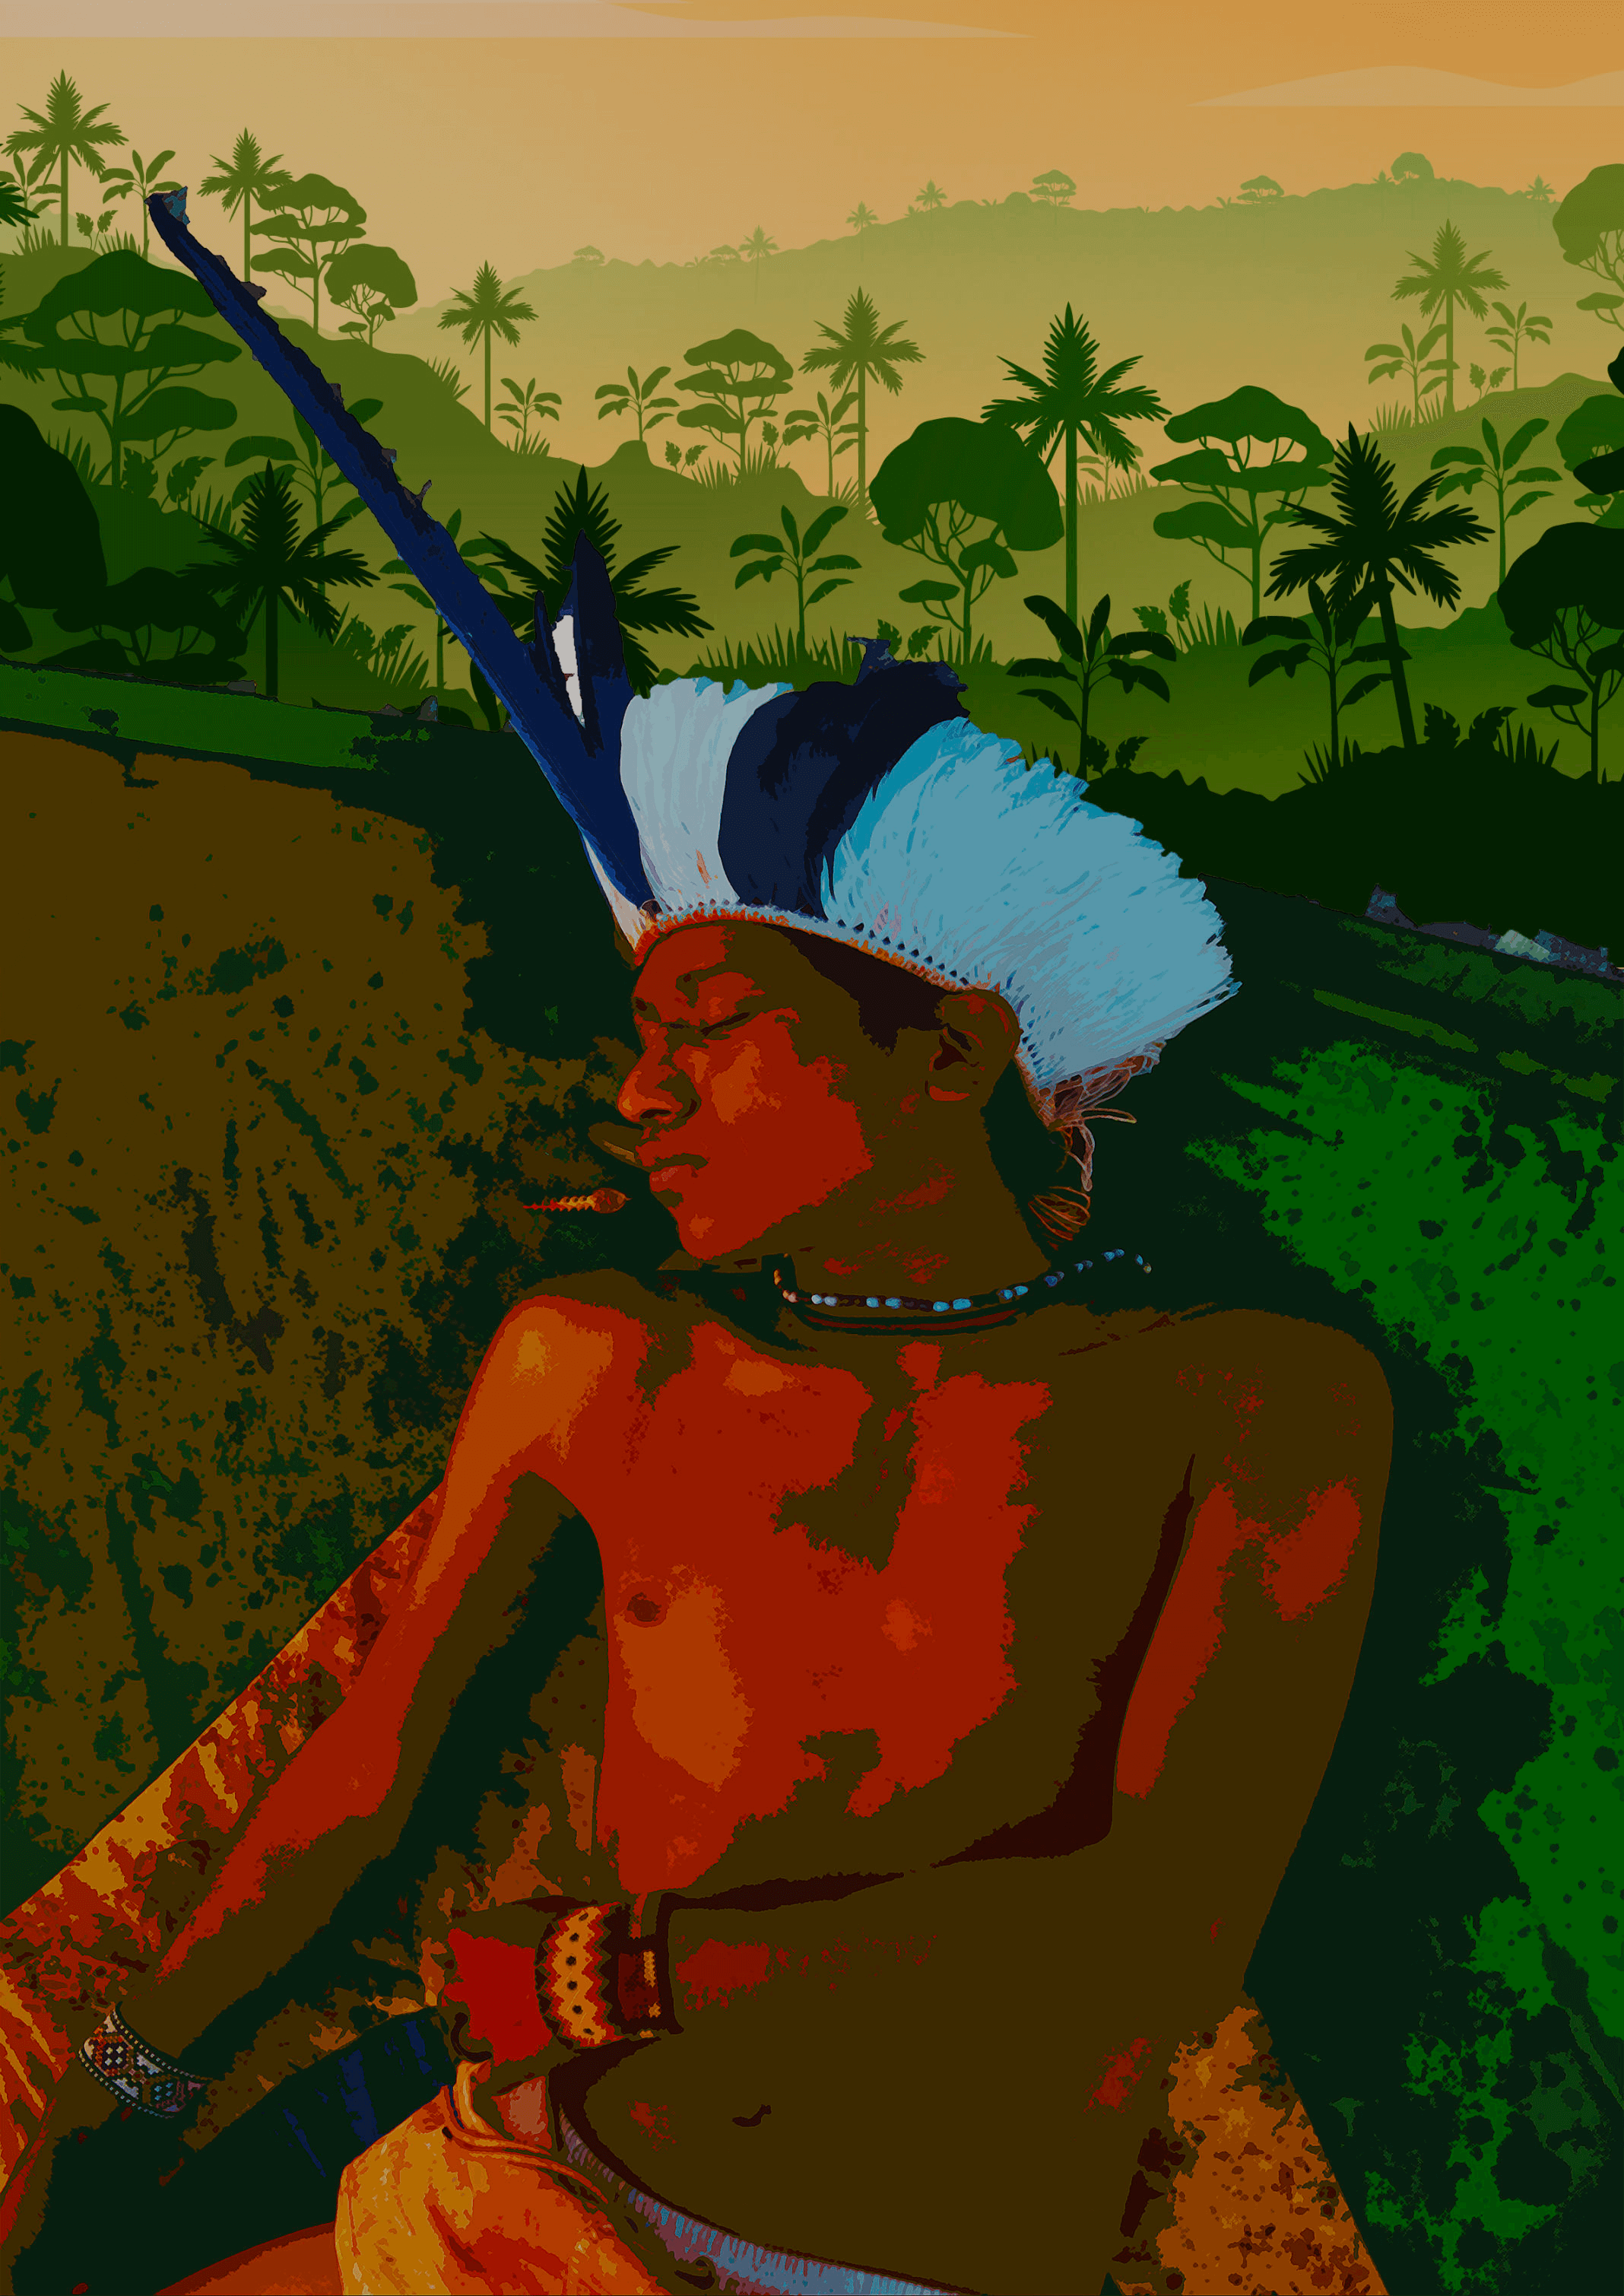 Dia da Amazônia